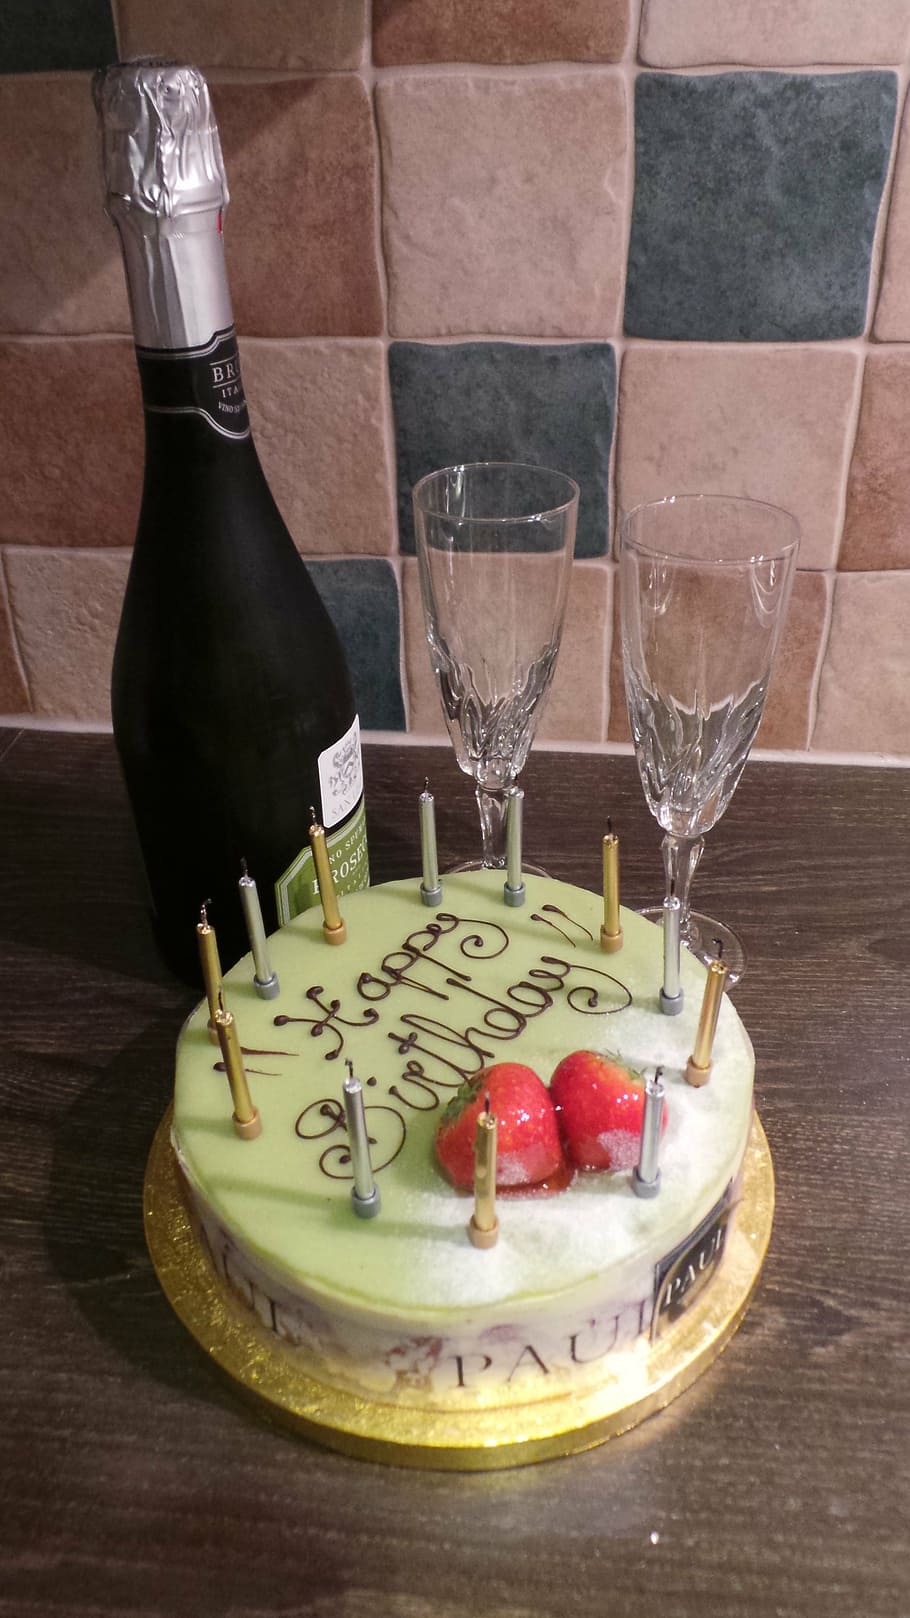 Celebration Cakes — Isabel's Bakehouse